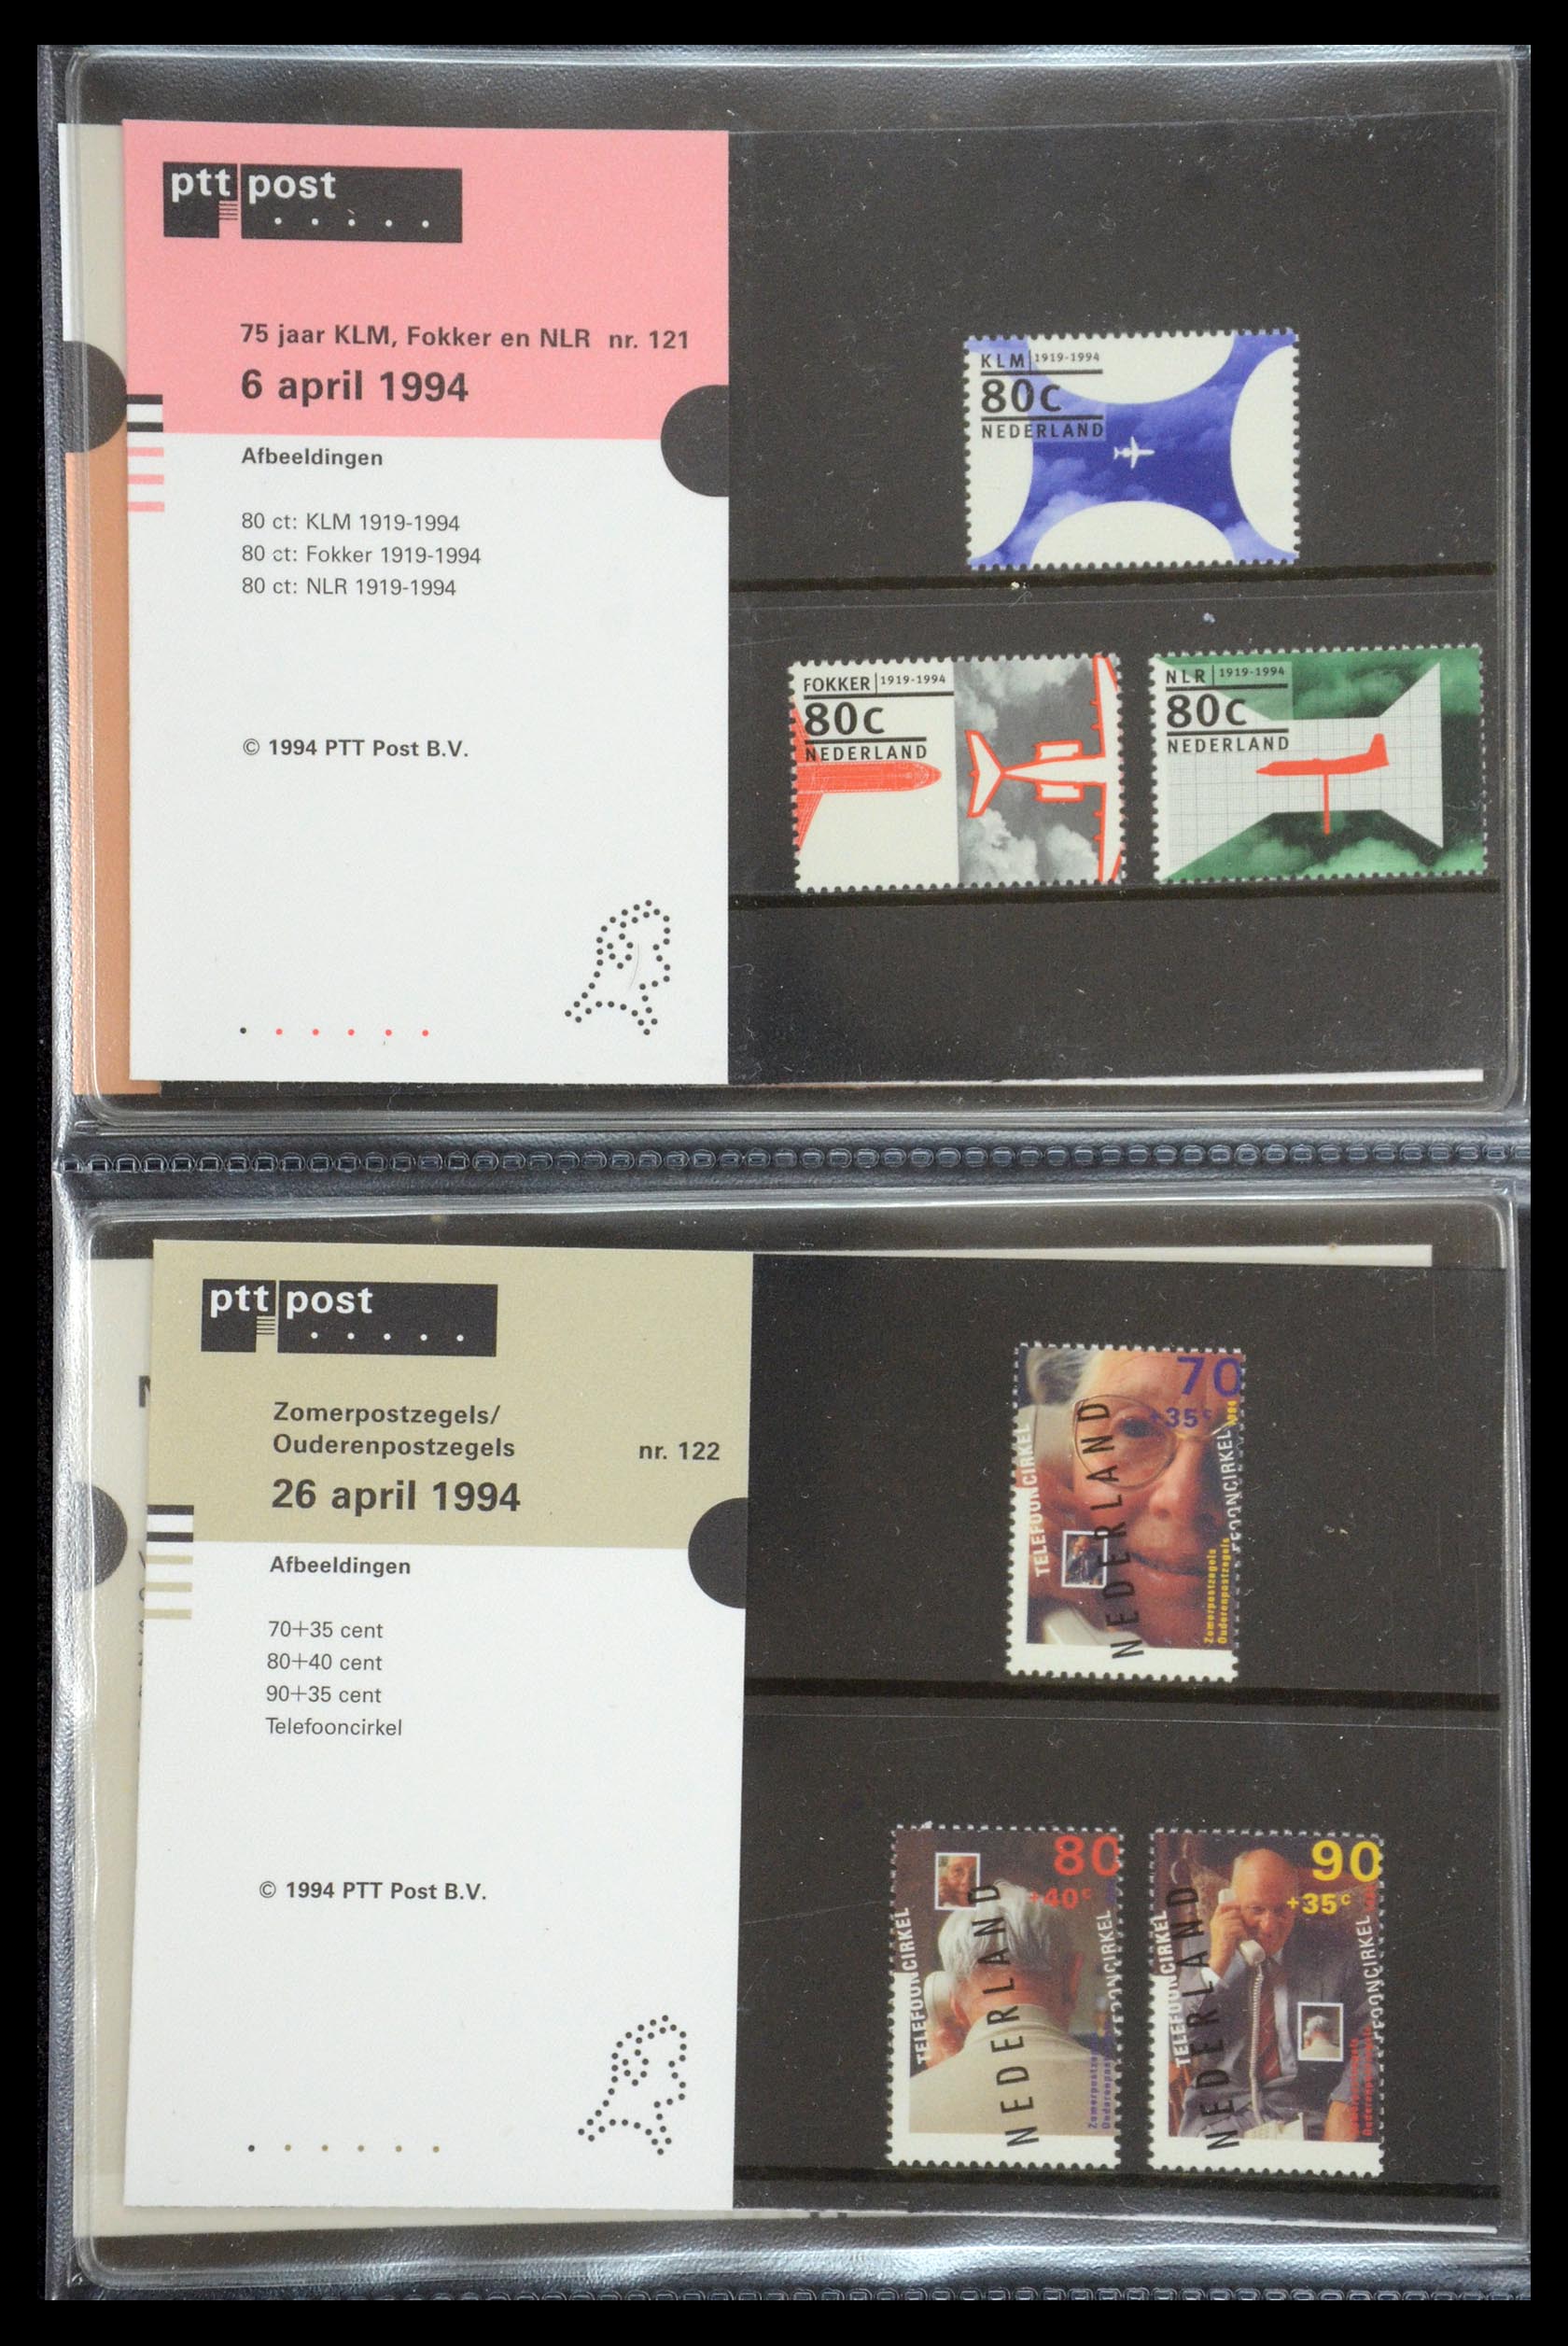 35187 062 - Stamp Collection 35187 Netherlands PTT presentation packs 1982-2019!